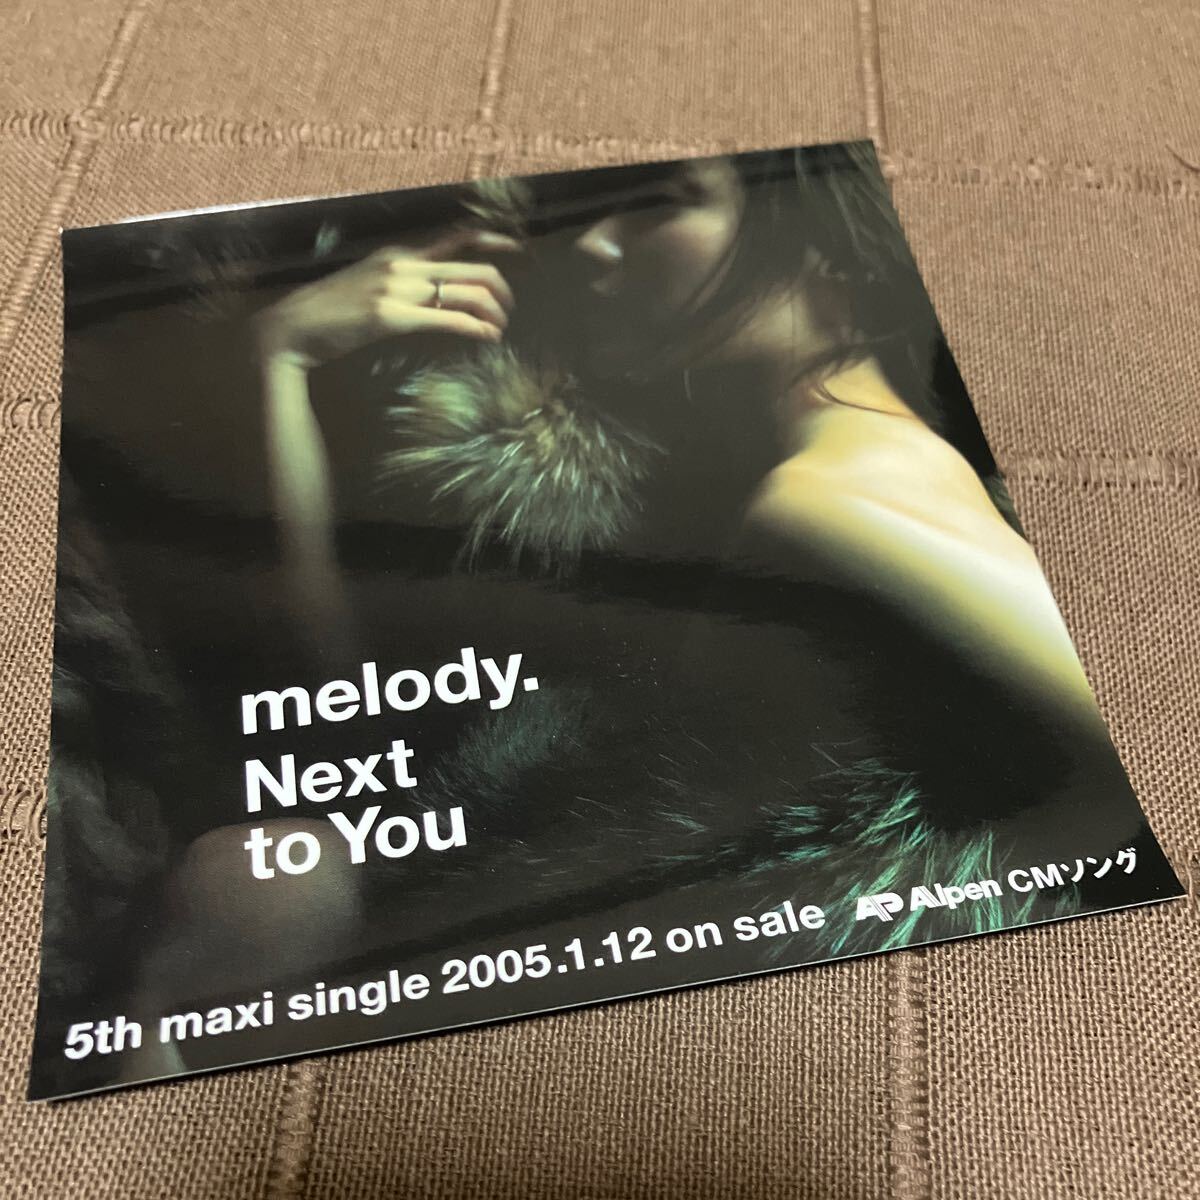 非売品 音楽CD melody. Next to You Alpen CMソング 5th maxi single 2005.1.12 on sale プロモ盤 ジャケ違い 鬼レア PRTF-990_画像9